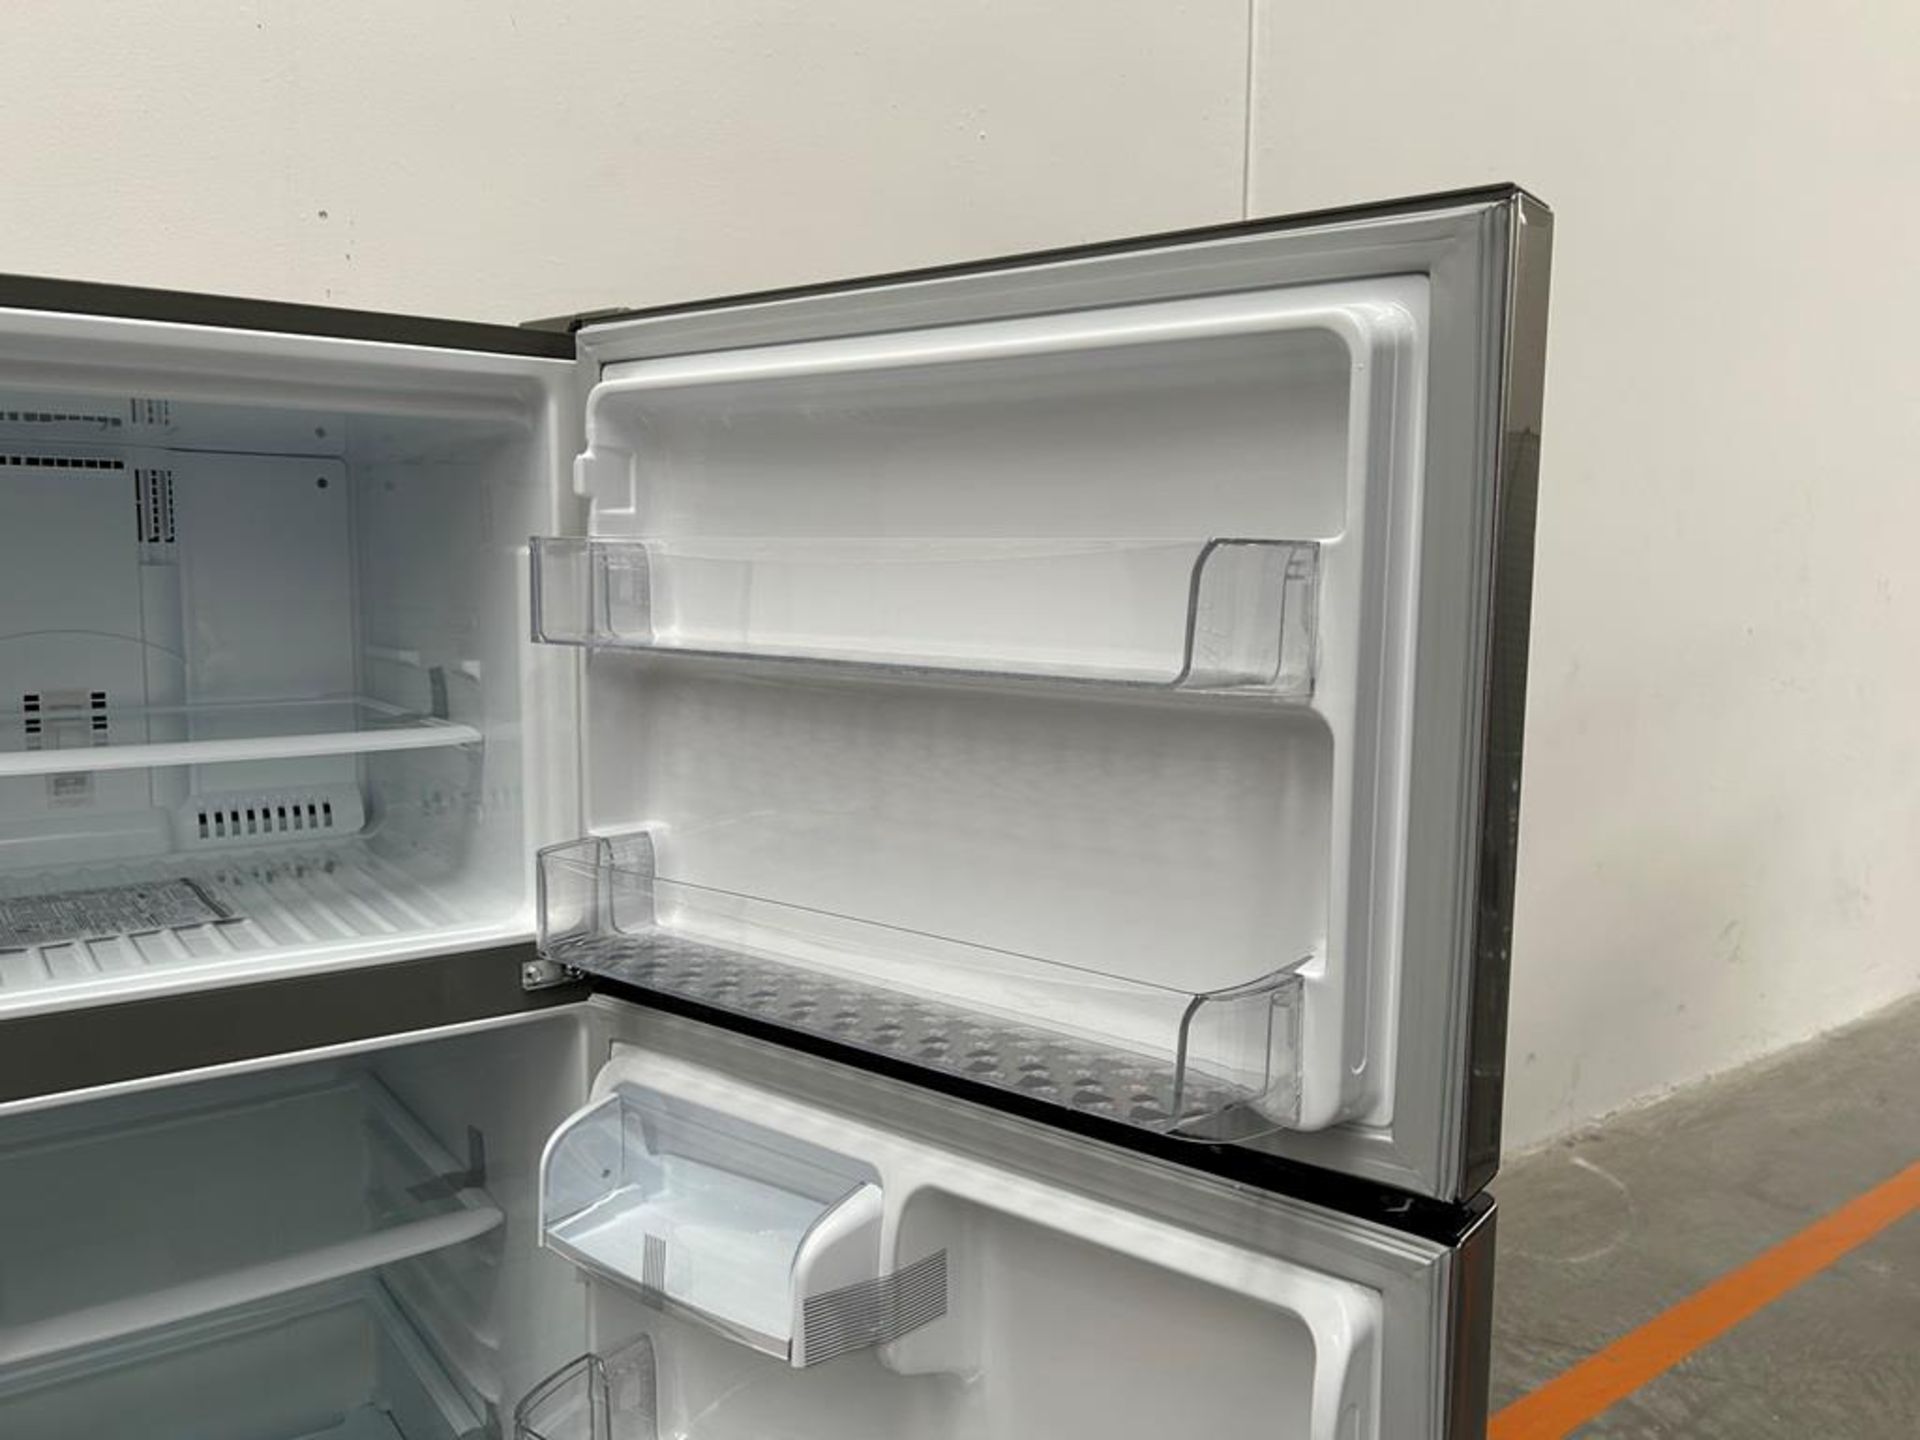 (NUEVO) Refrigerador Marca LG, Modelo LT57BPSX, Serie D1X339, Color GRIS - Image 8 of 11